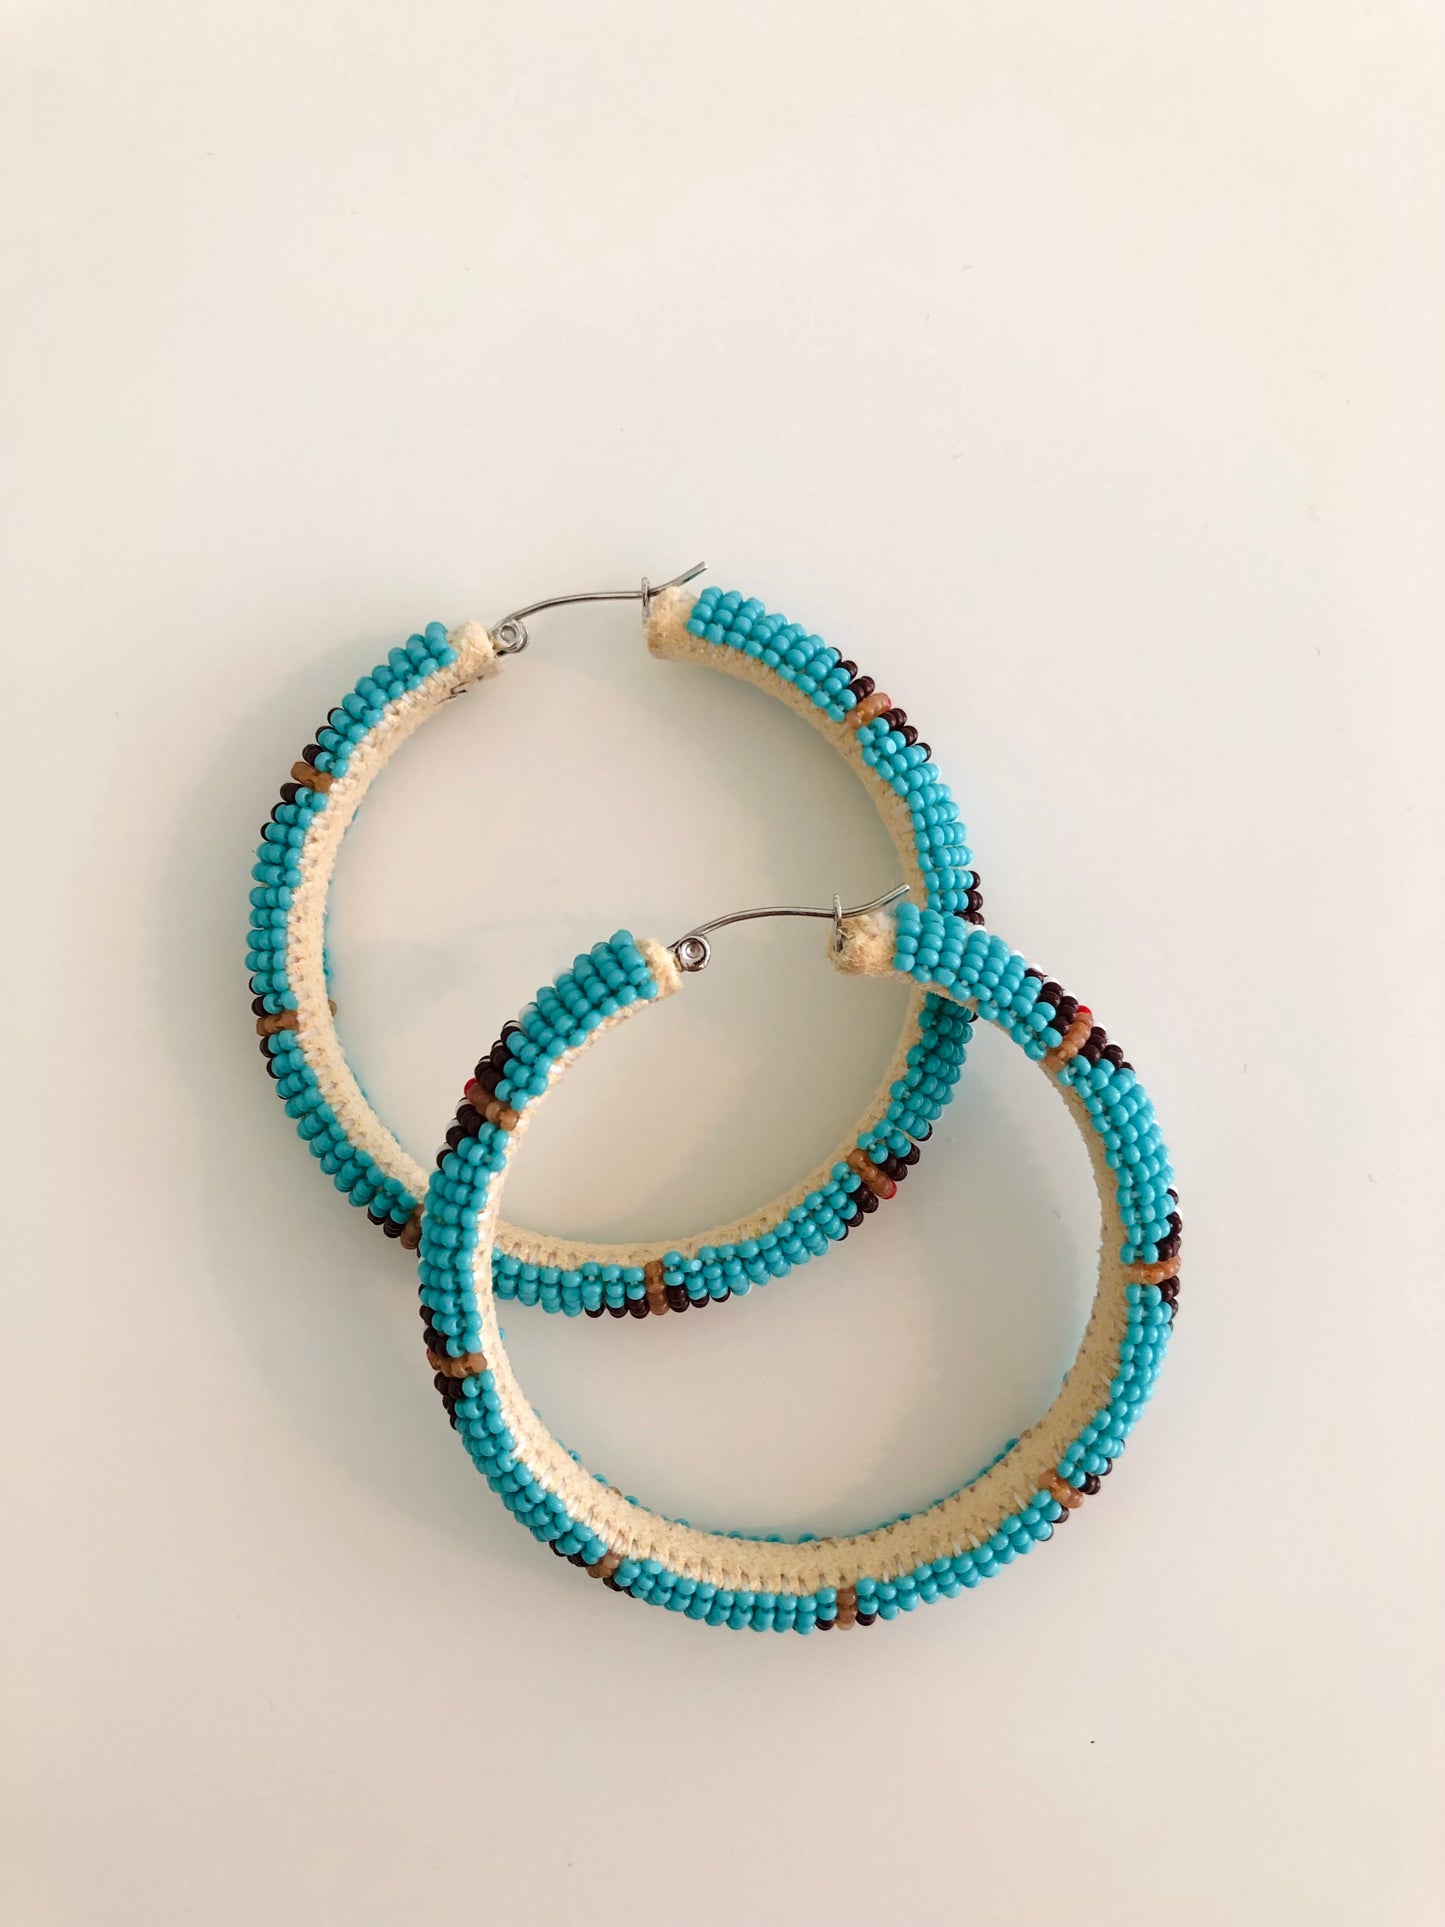 Beaded Hoop Earrings - Turquoise Blue